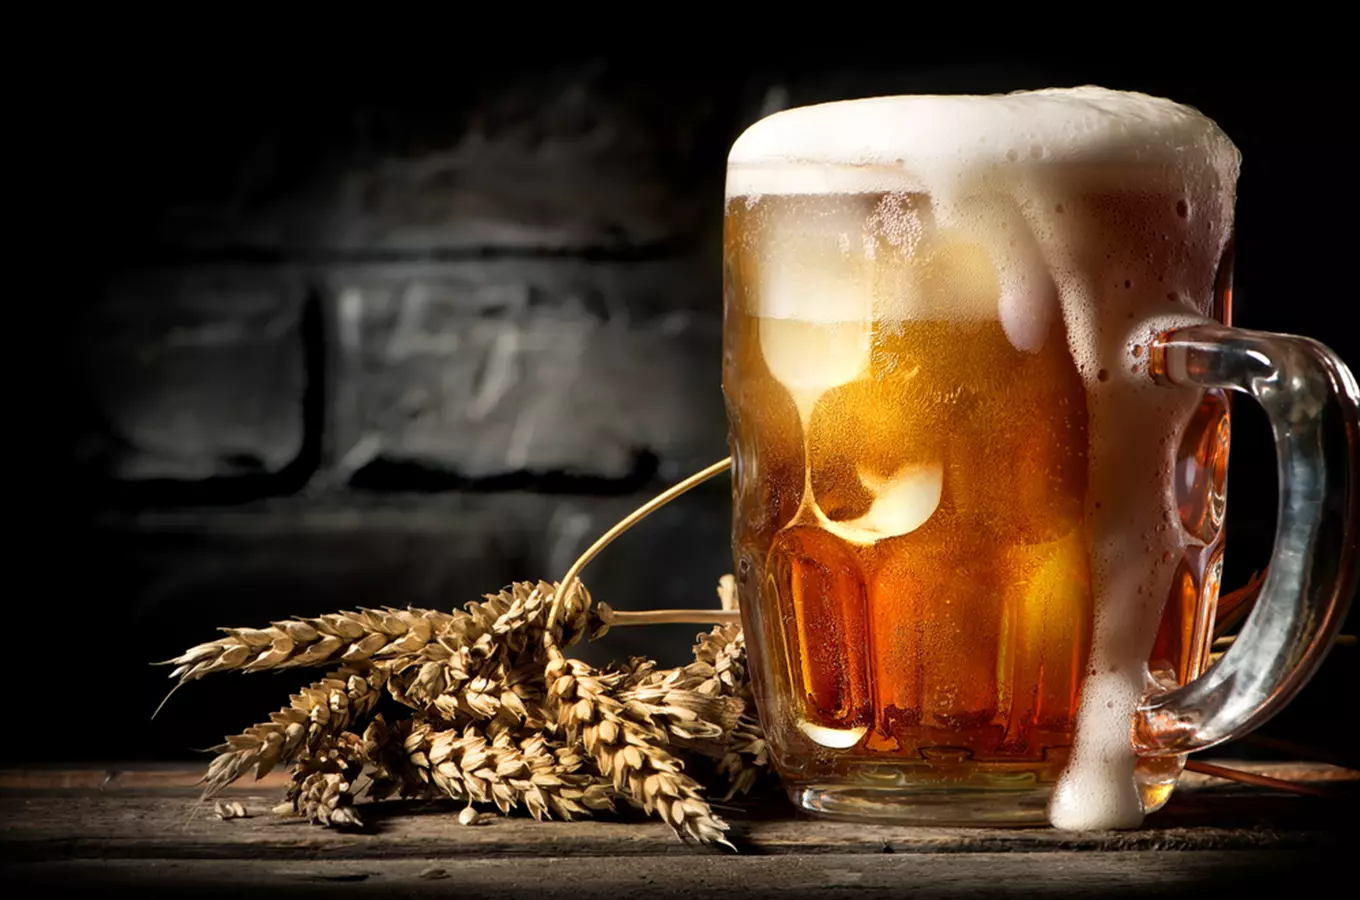 Čtrnáct krajů & čtrnáct tipů: dobré pivo z dobrých minipivovarů anebo kde a na čem si pochutnáte